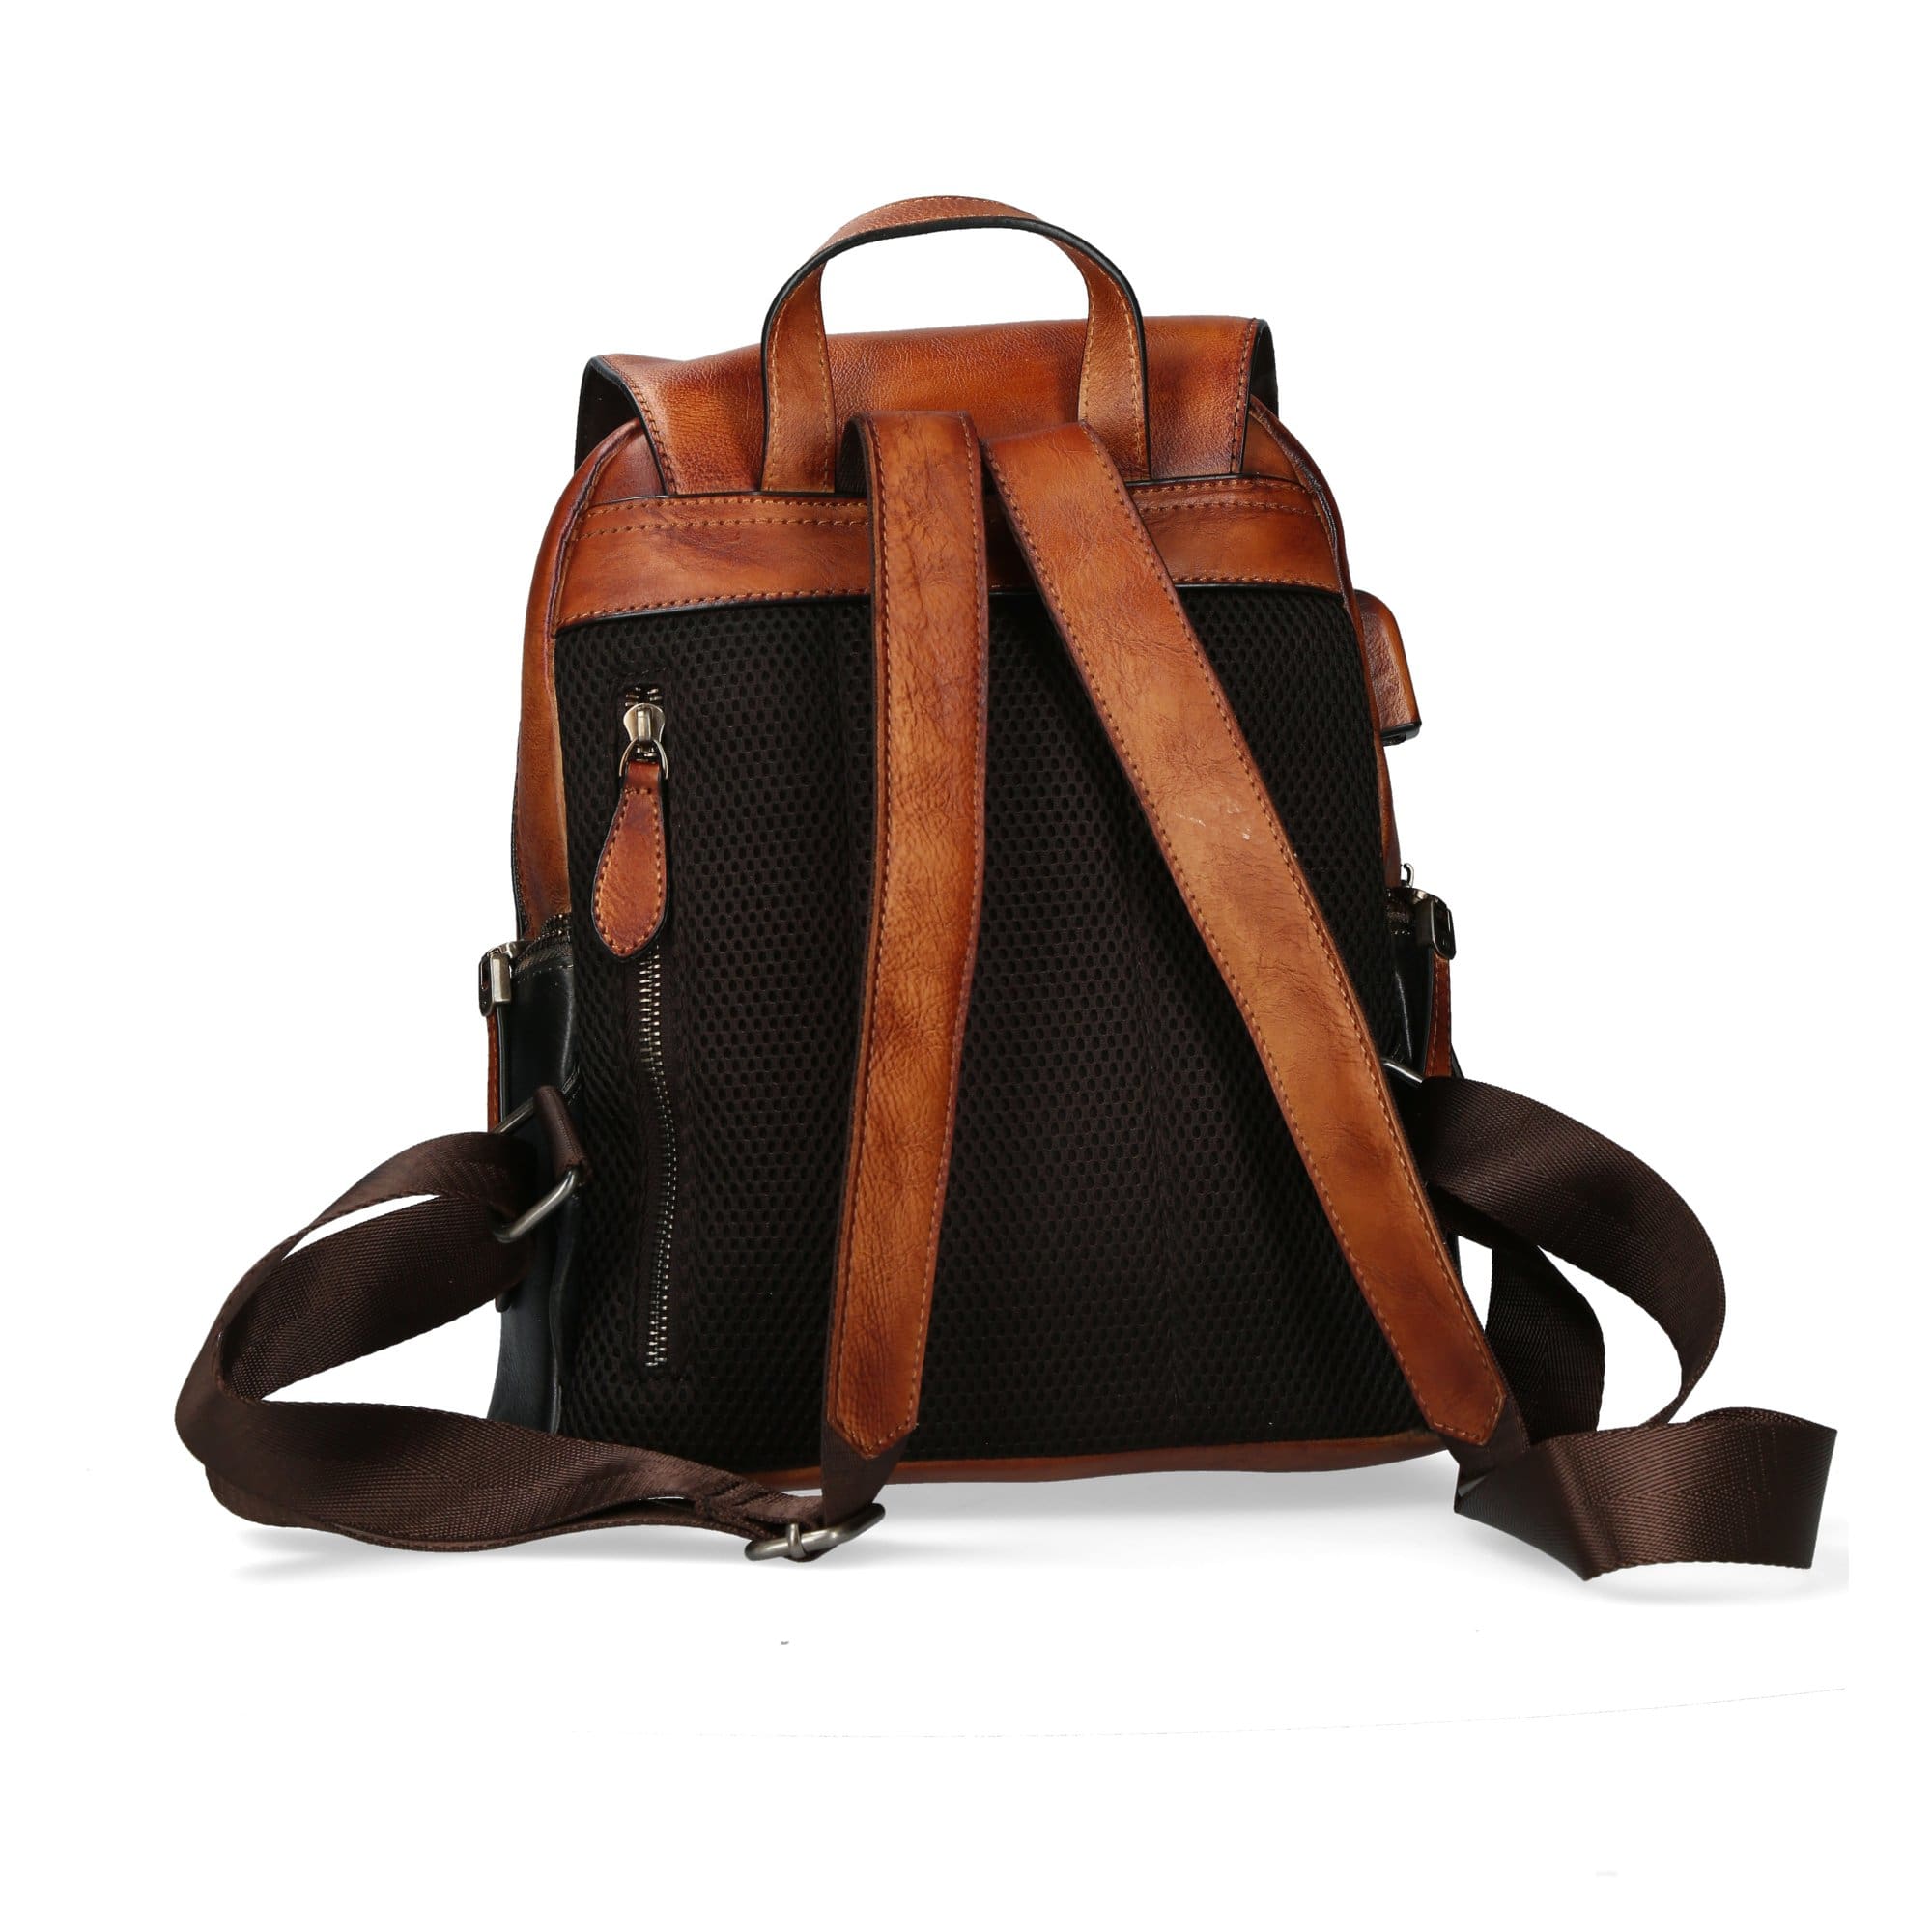 Taschen Rucksack aus Dryades-Leder - Taschen